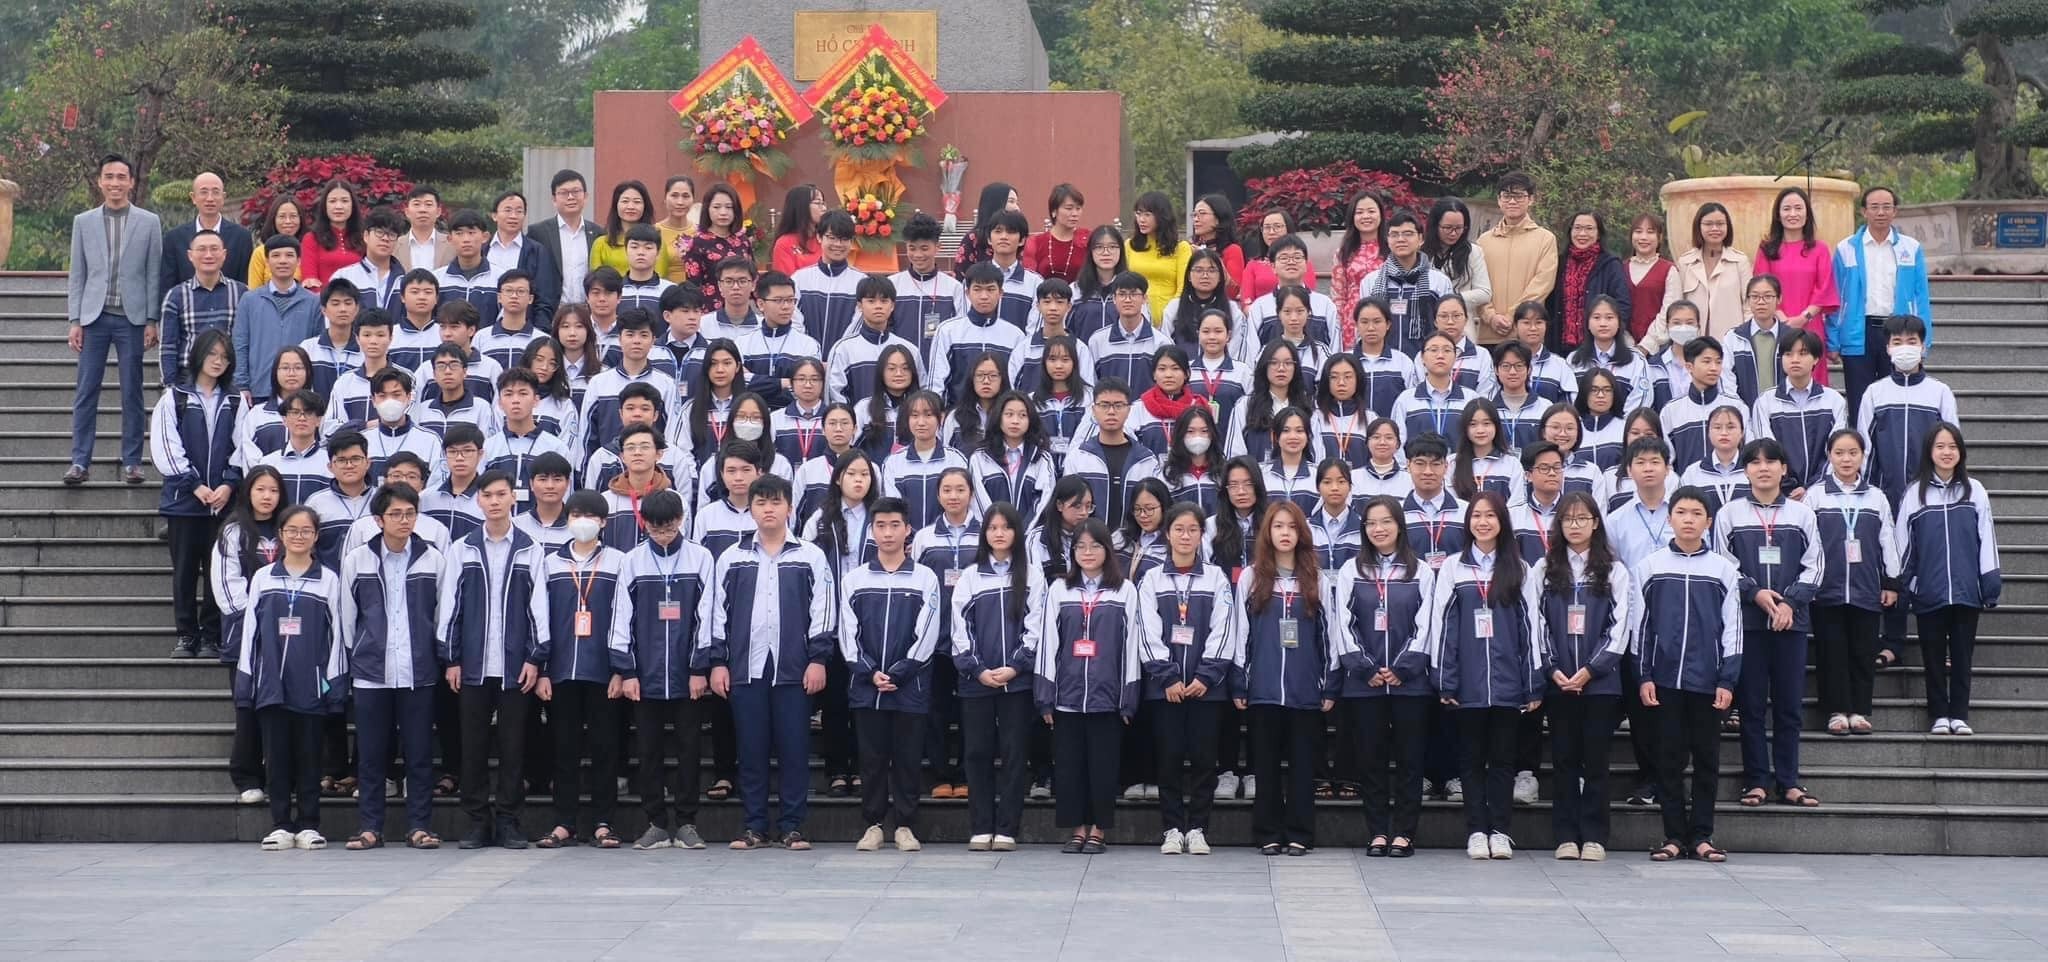 bna_Đoàn học sinh tham dự Kỳ thi chọn học sinh giỏi quốc gia của Trường THPT chuyên Phan Bội Châu.jpg